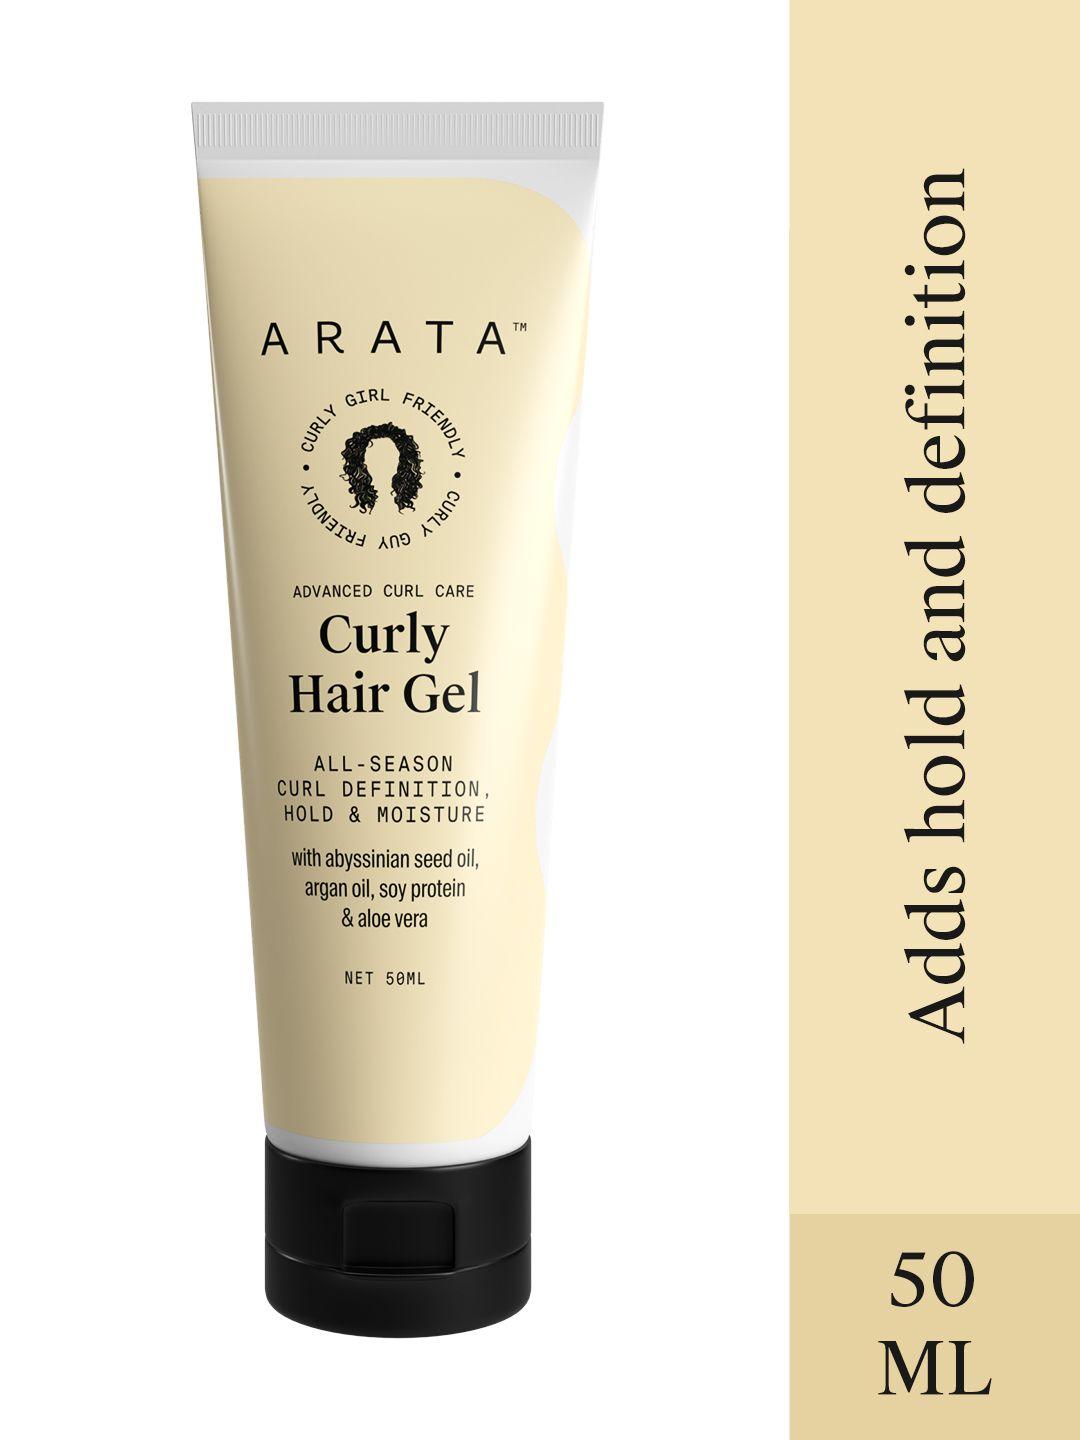 arata advanced curl care curl enhancing hair gel 50ml